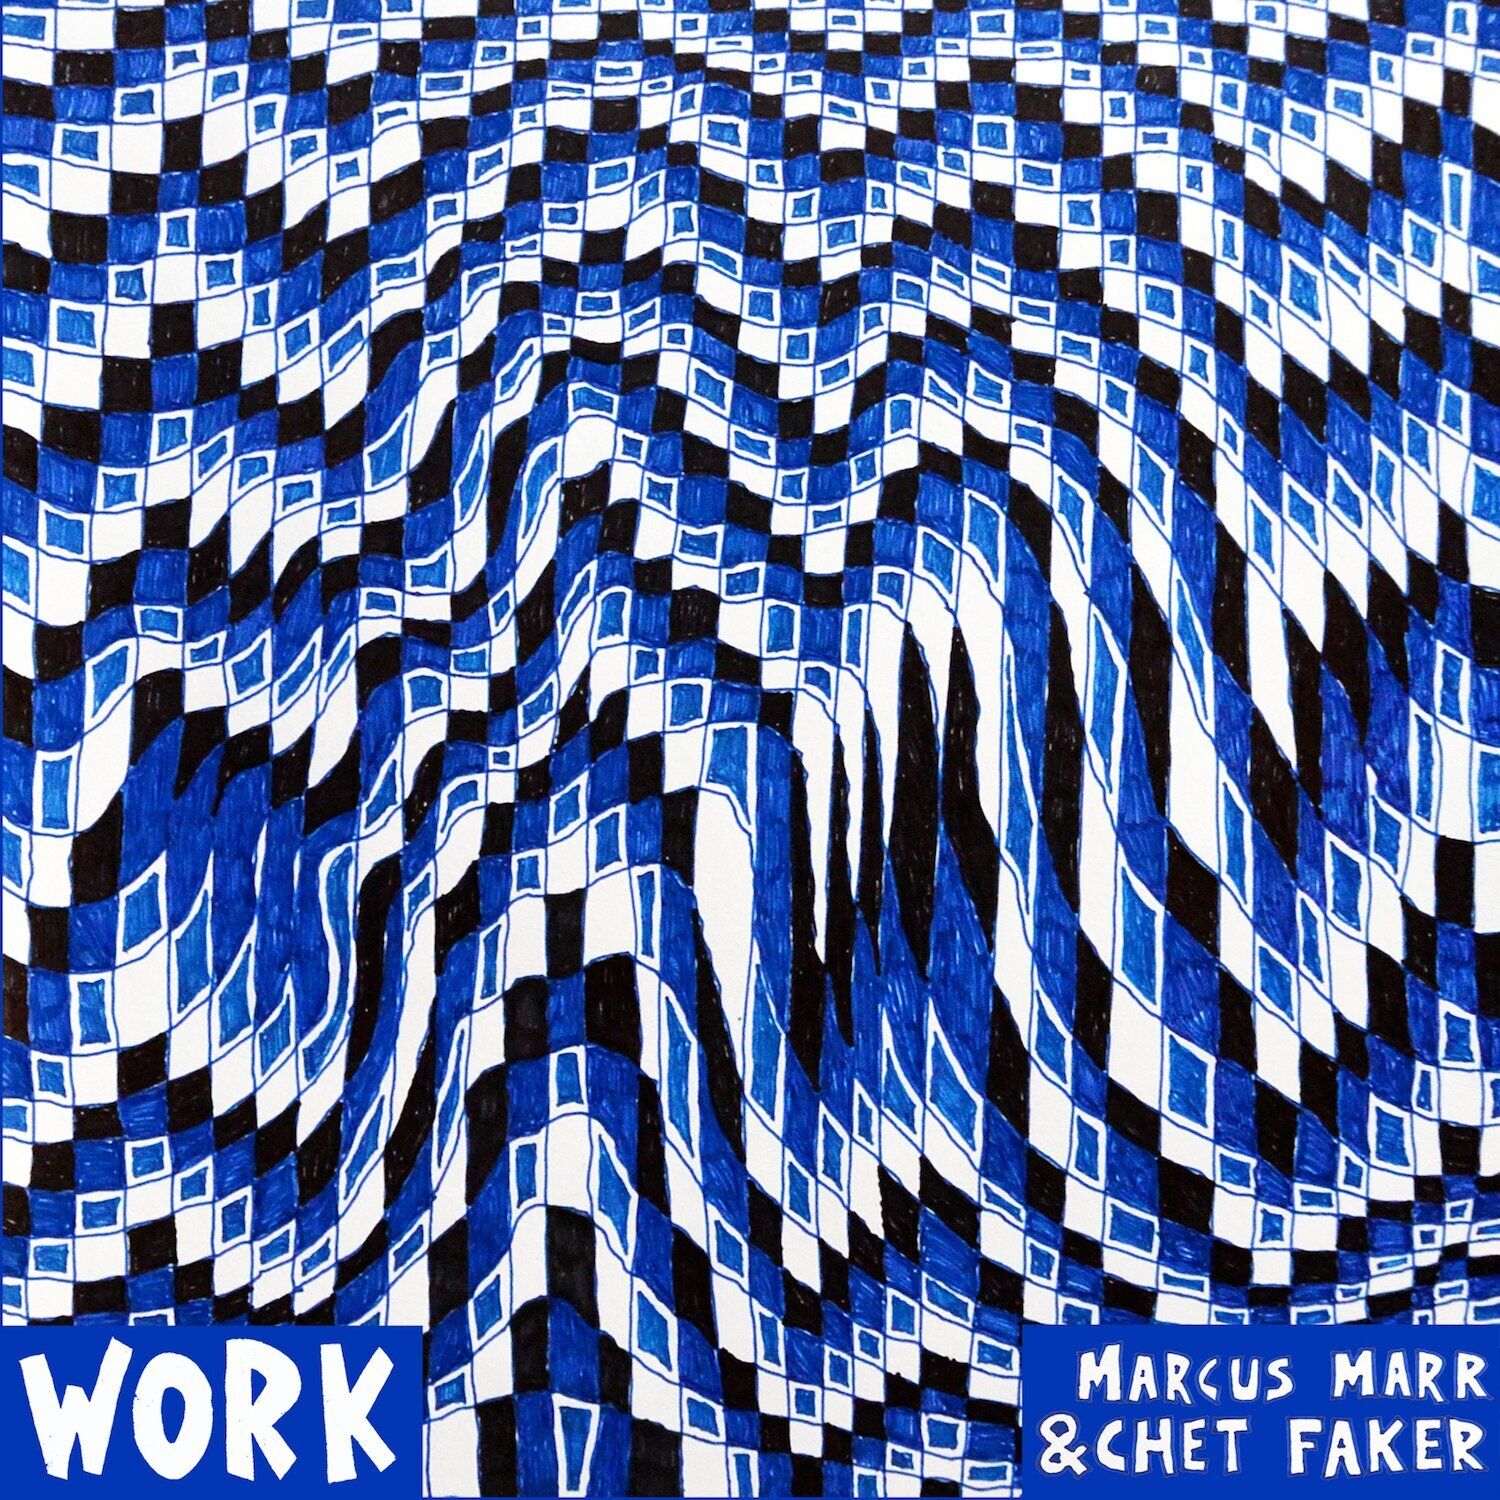 Marcus Marr & Chet Faker Work EP (Vinyl)